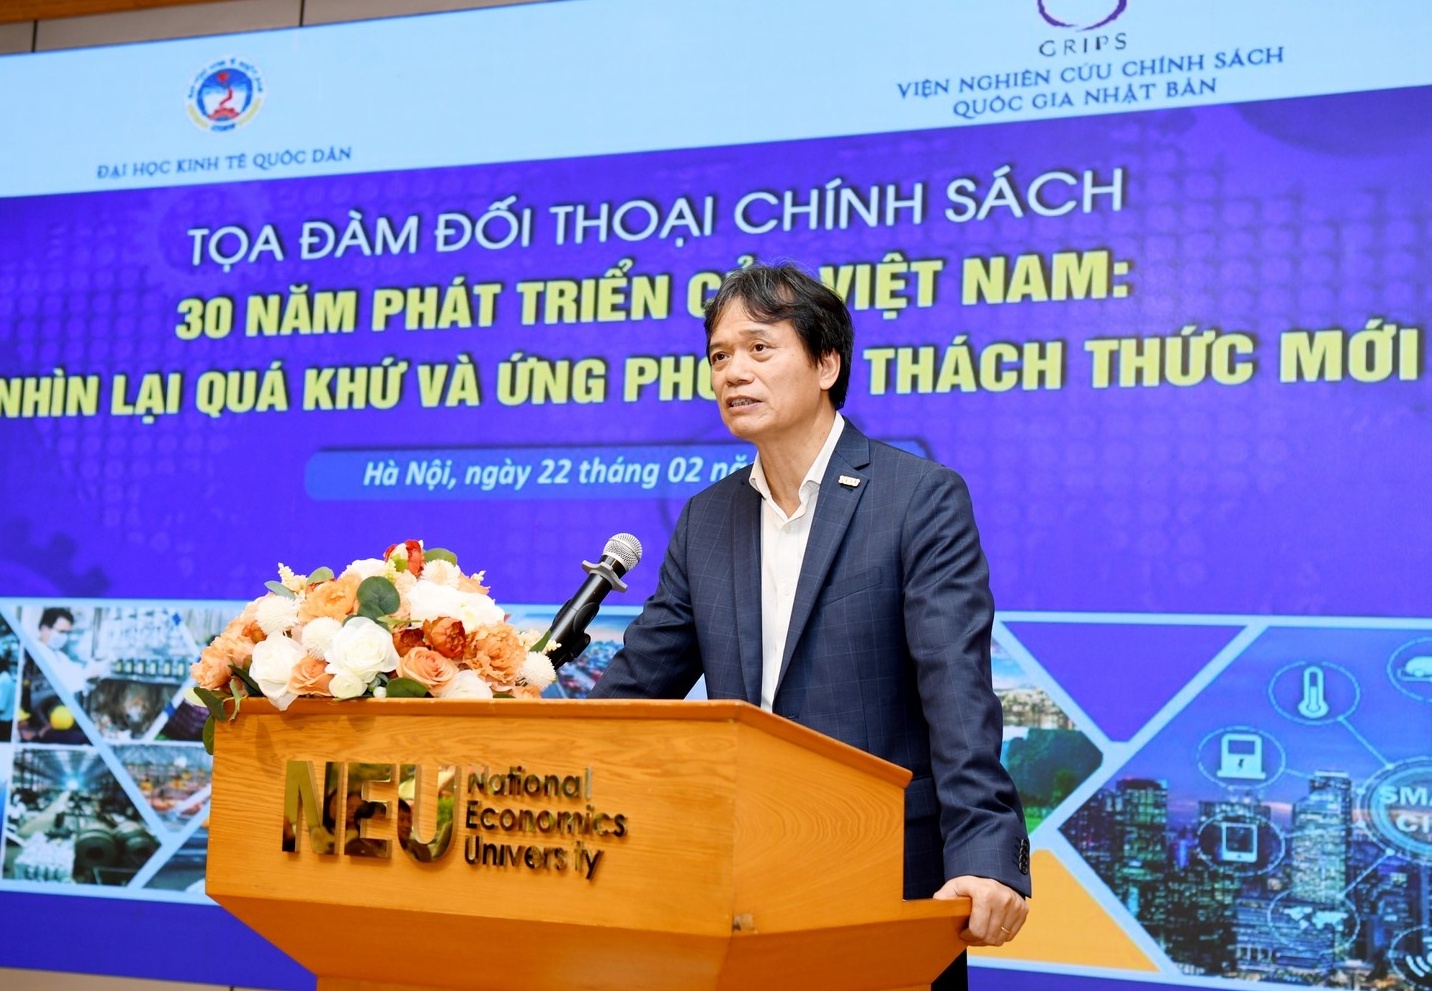 Phát triển kinh tế Việt Nam: Nhìn lại quá khứ và ứng phó với thách thức mới